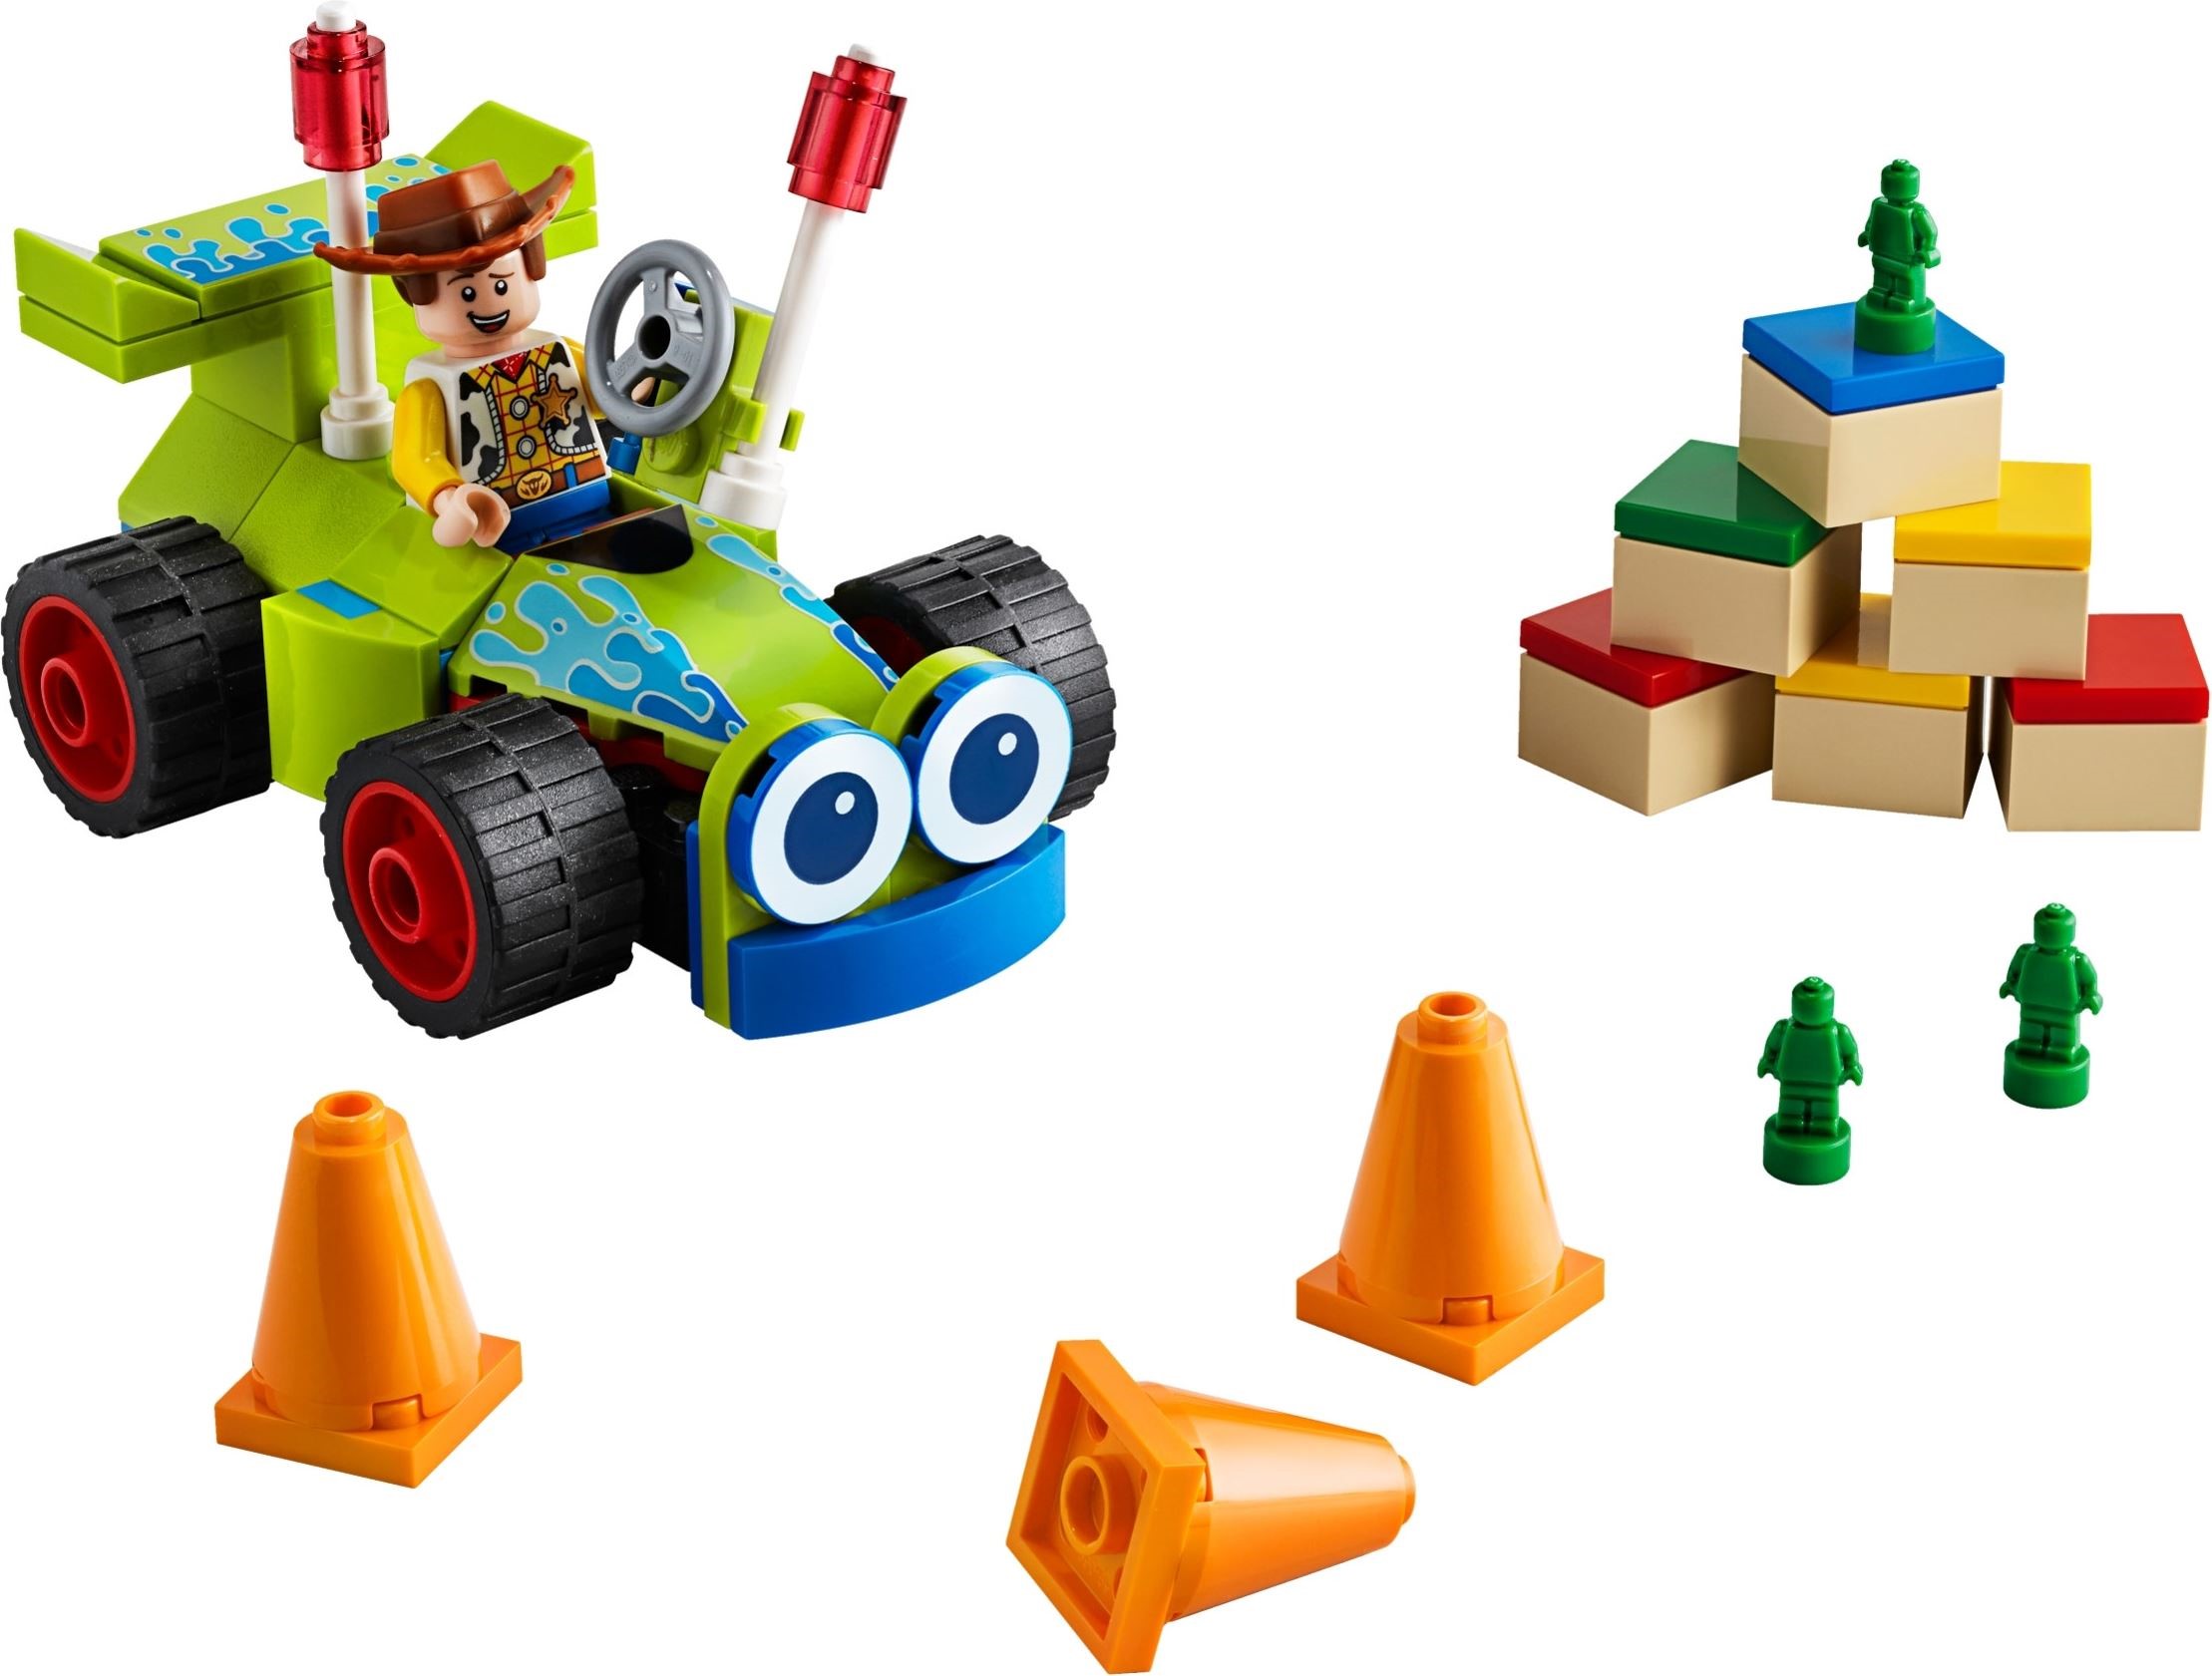 slack svamp ekstremt New York Toy Fair 2019: Toy Story 4 | Brickset: LEGO set guide and database